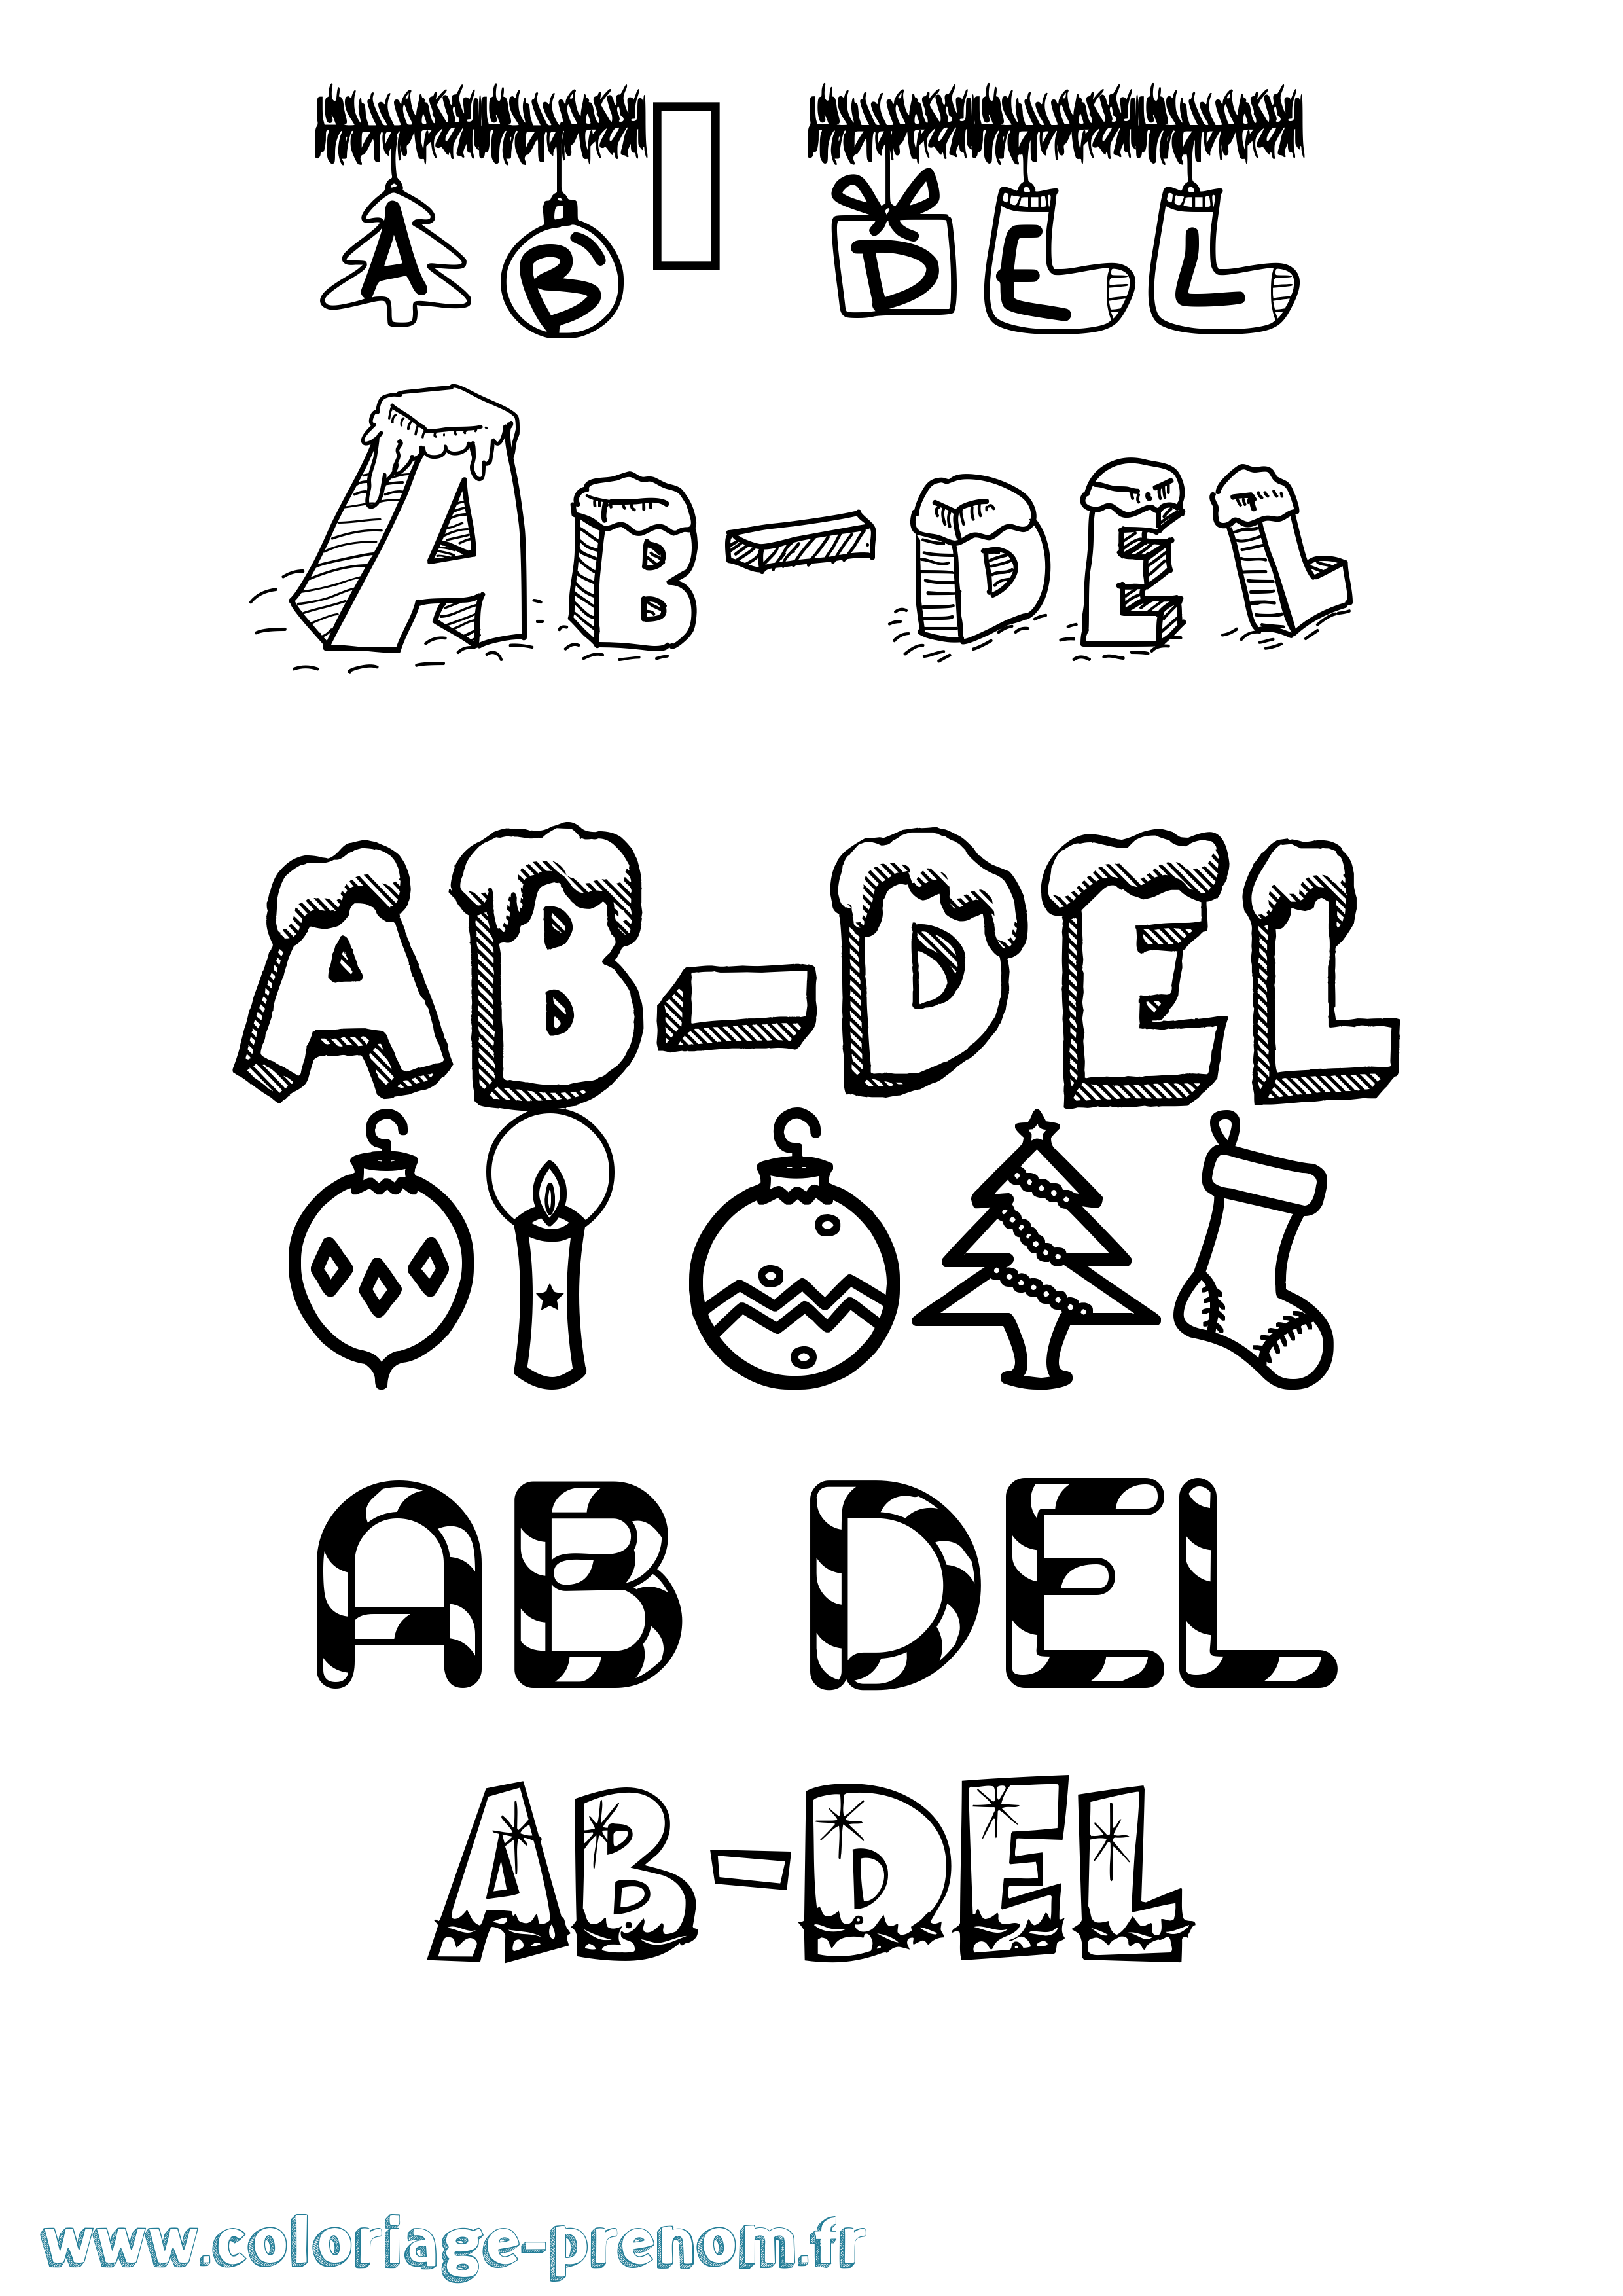 Coloriage prénom Ab-Del Noël